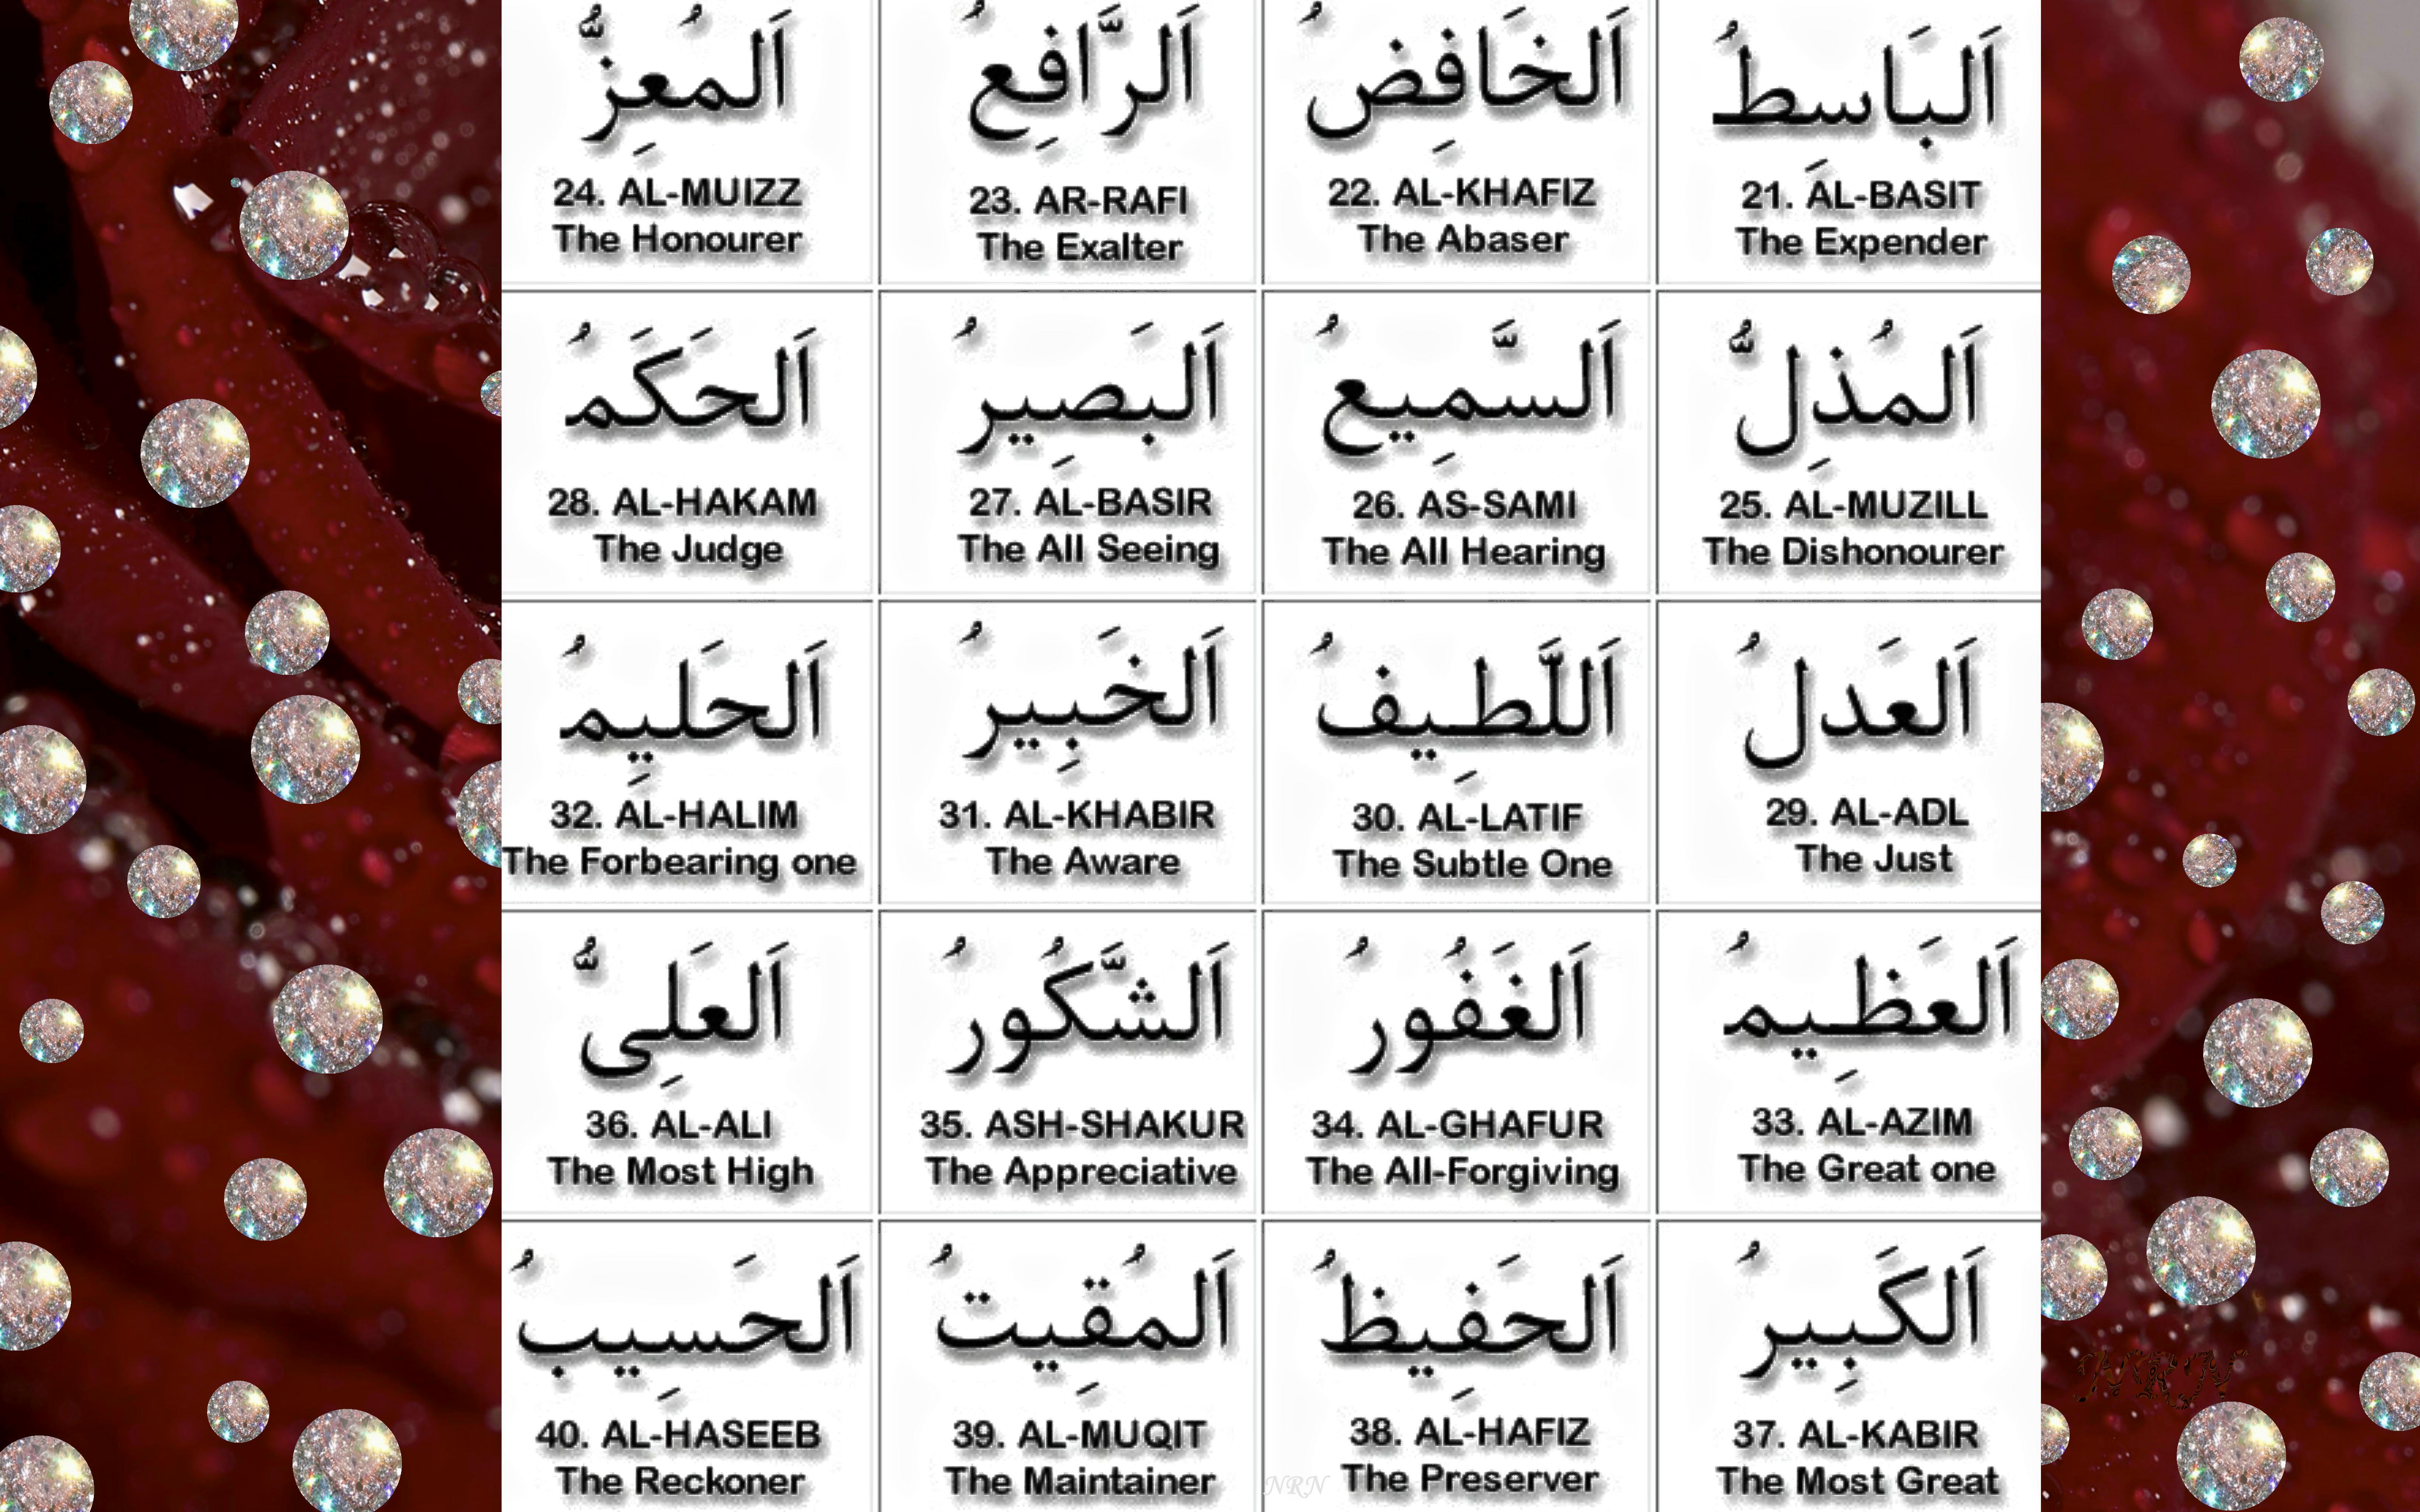 99 names of Allah - 2